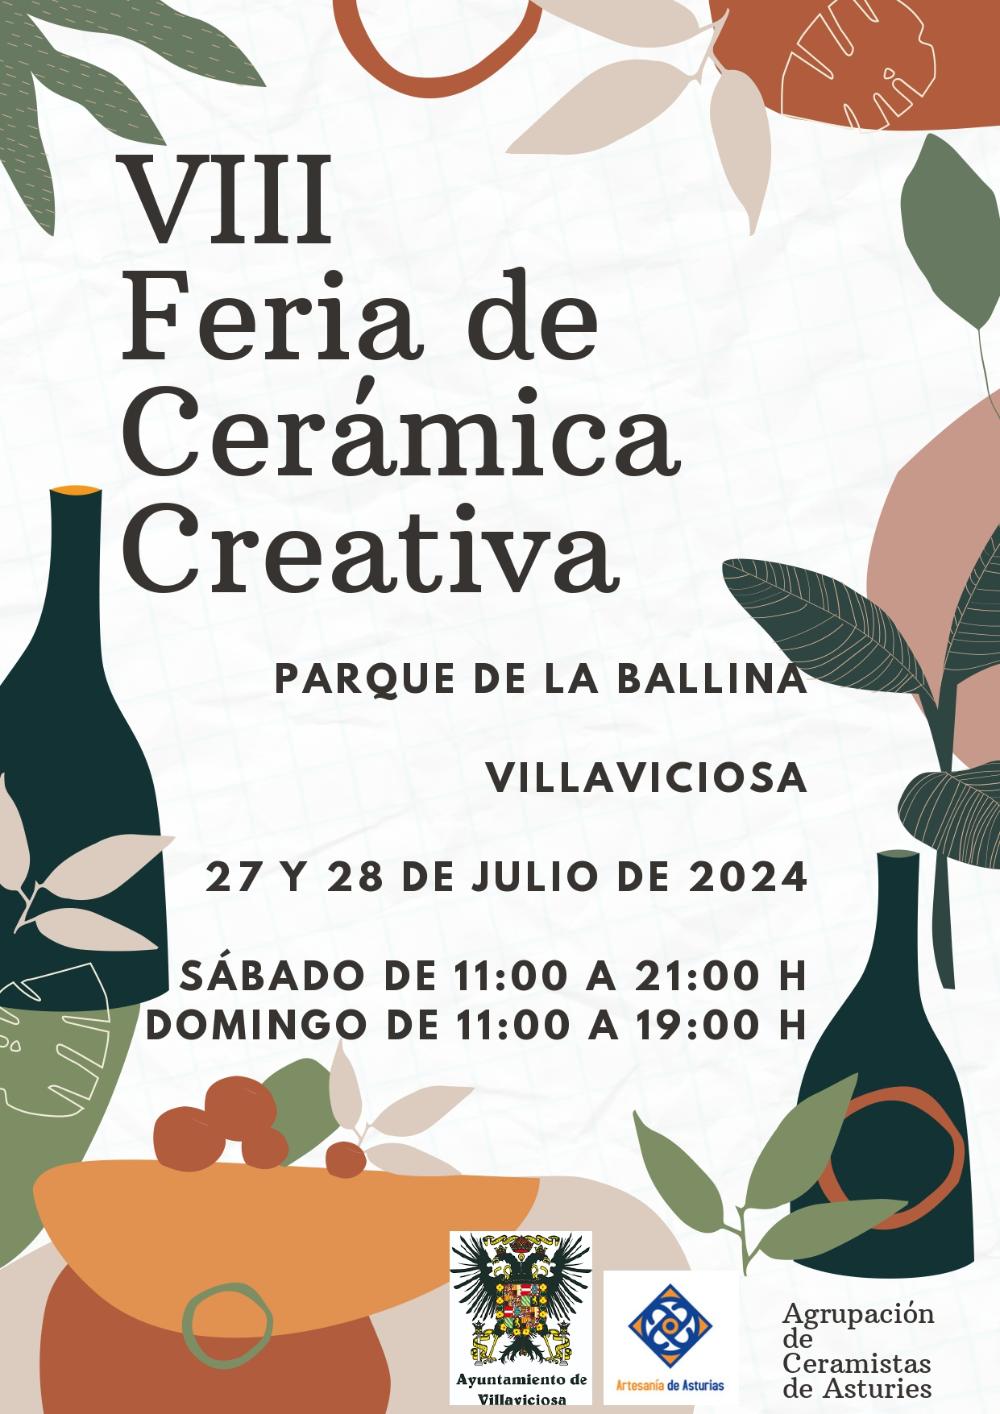 VIII Feria de Cerámica Creativa Villaviciosa 2024